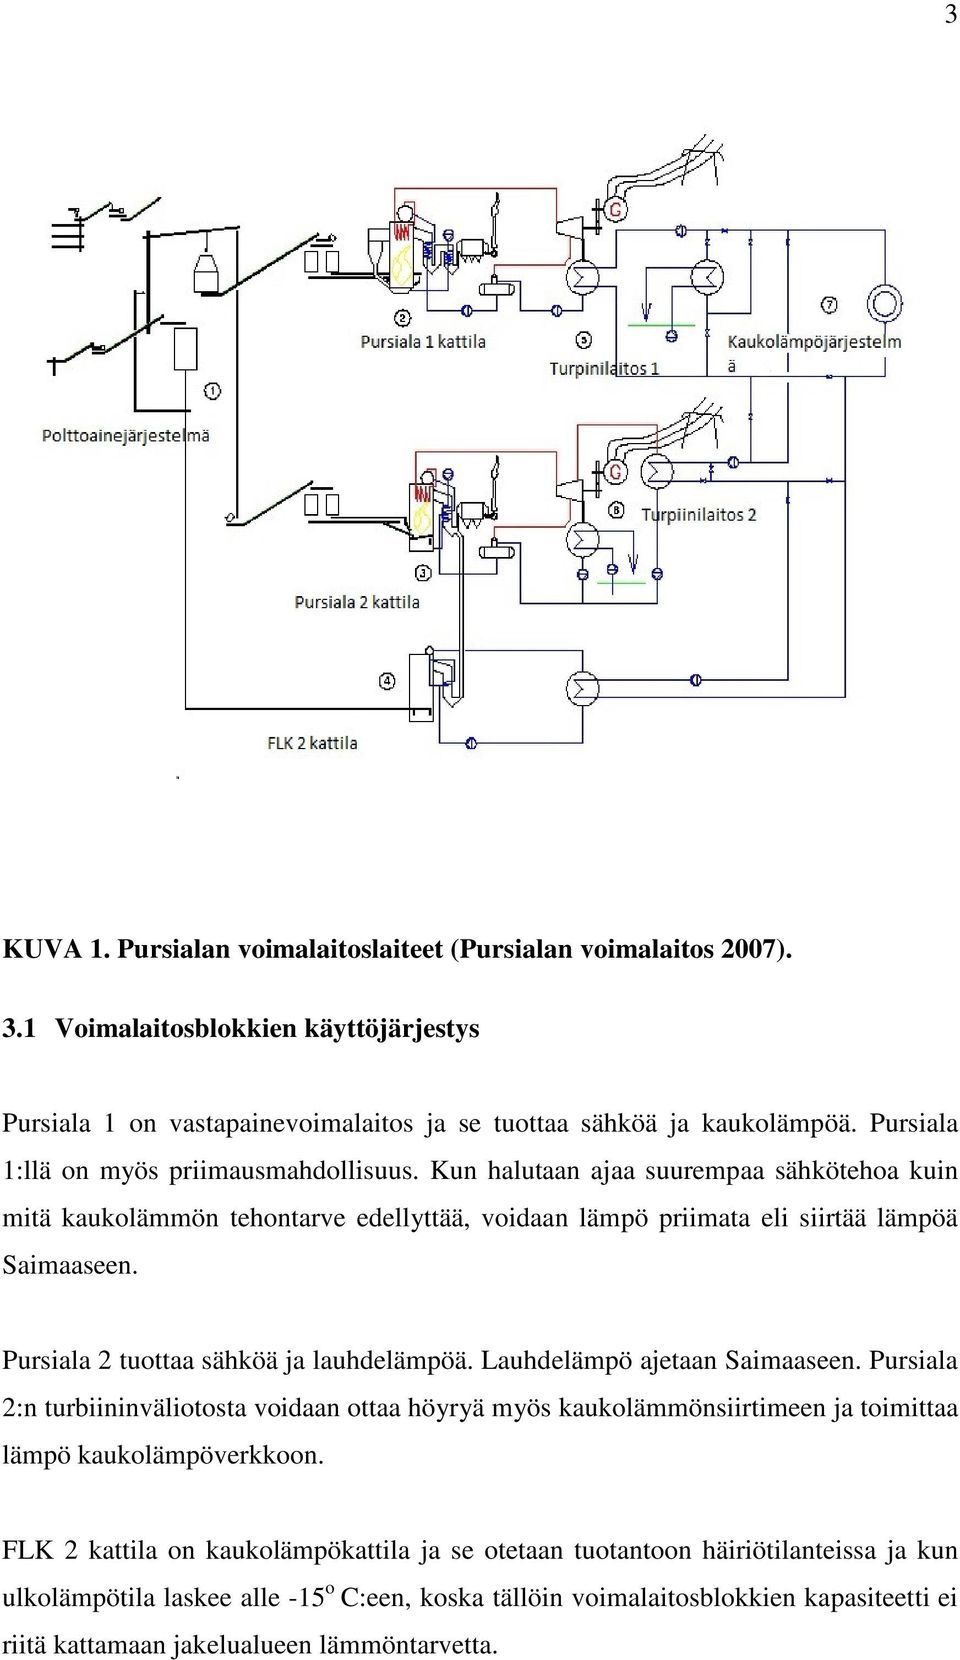 Pursiala 2 tuottaa sähköä ja lauhdelämpöä. Lauhdelämpö ajetaan Saimaaseen. Pursiala 2:n turbiininväliotosta voidaan ottaa höyryä myös kaukolämmönsiirtimeen ja toimittaa lämpö kaukolämpöverkkoon.